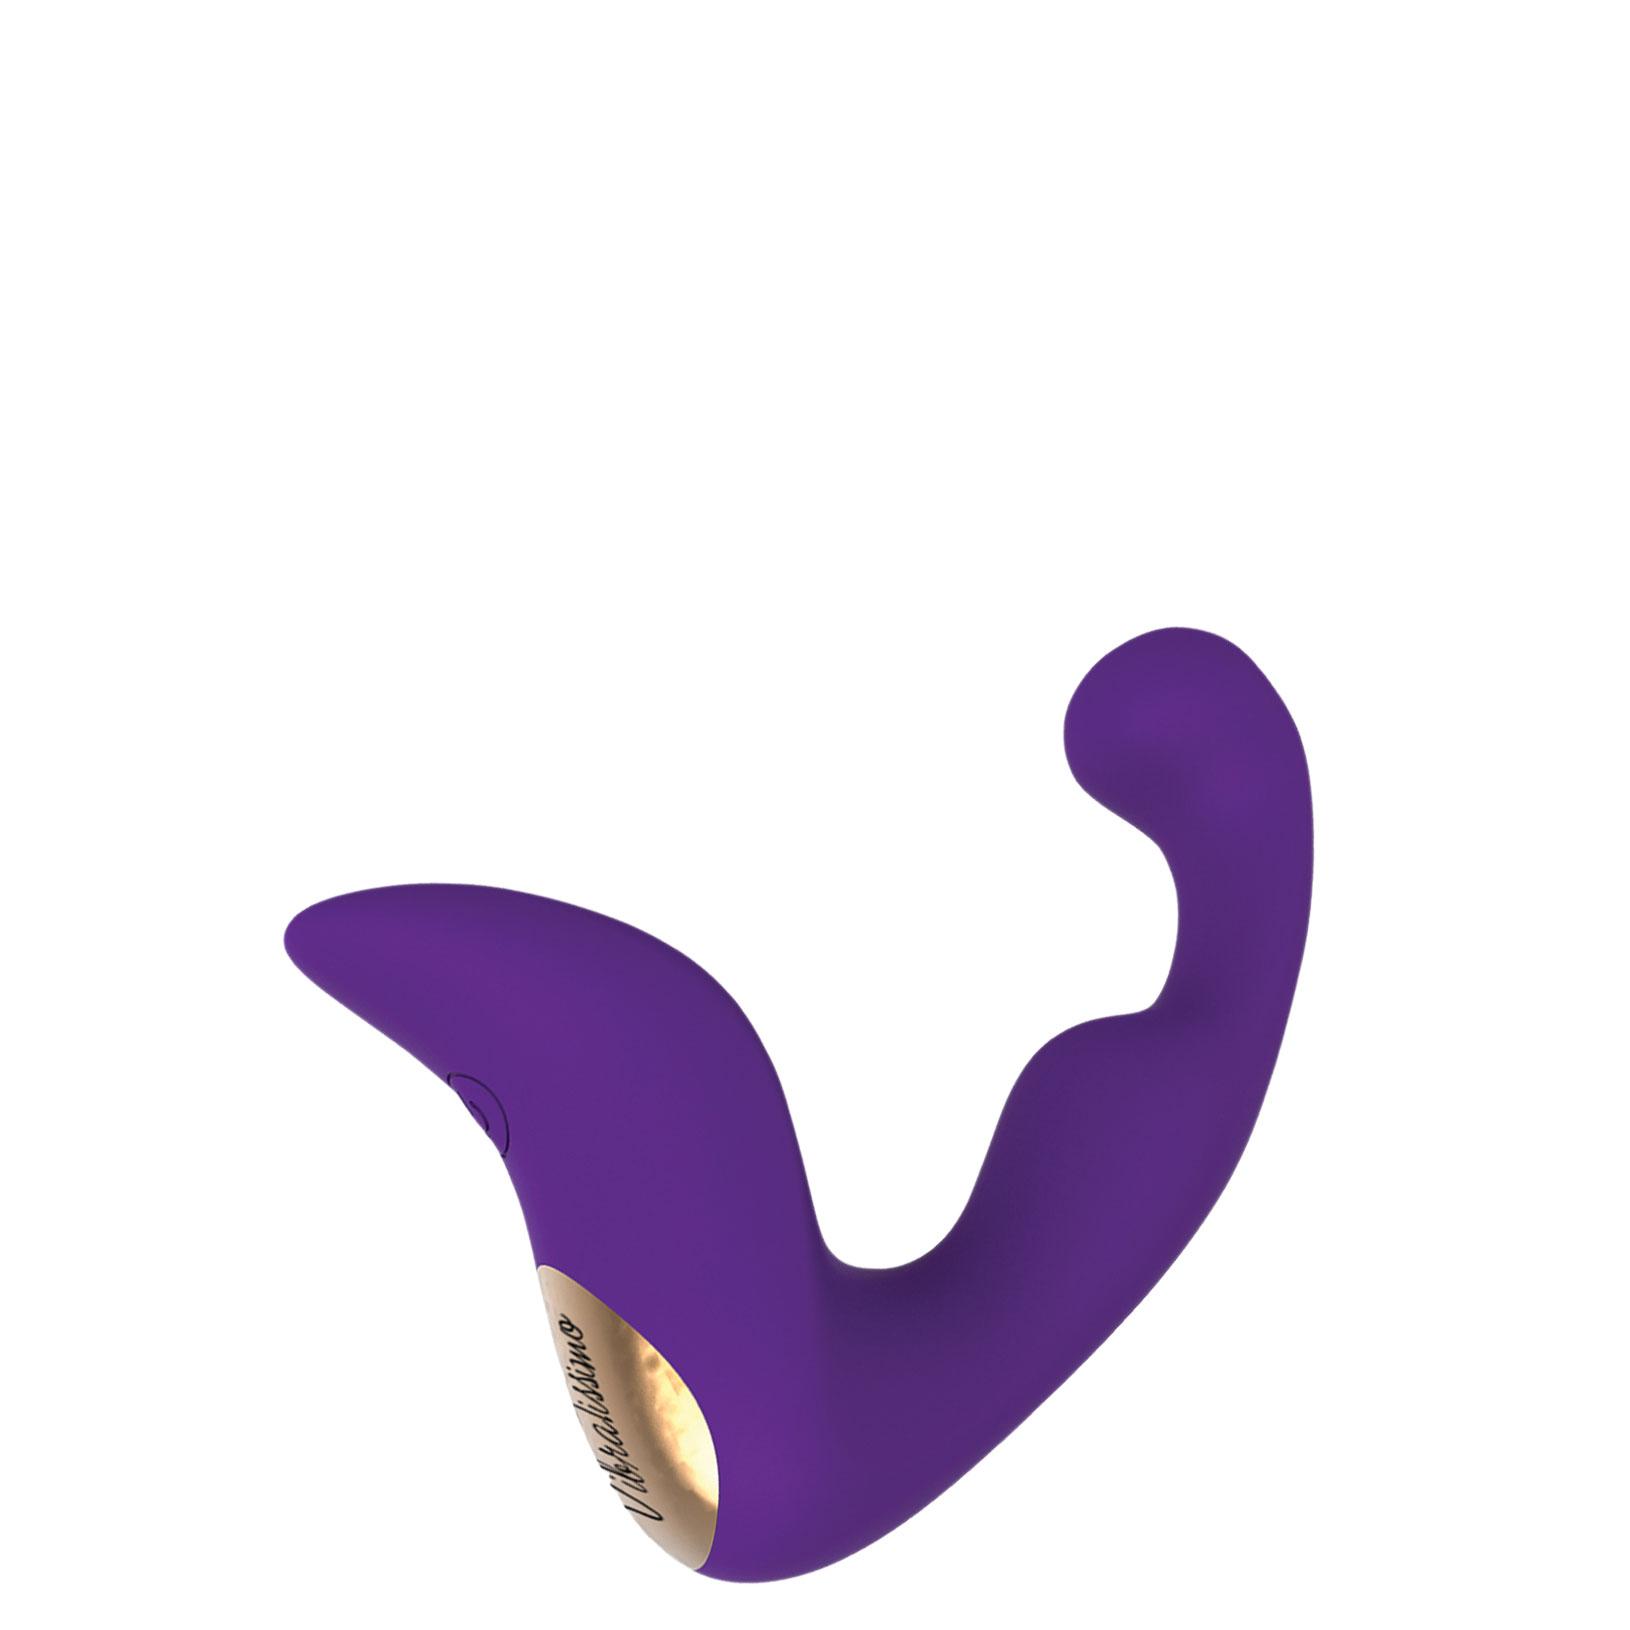 AMOR Vibratissimo Prostate Vibrator, Purple